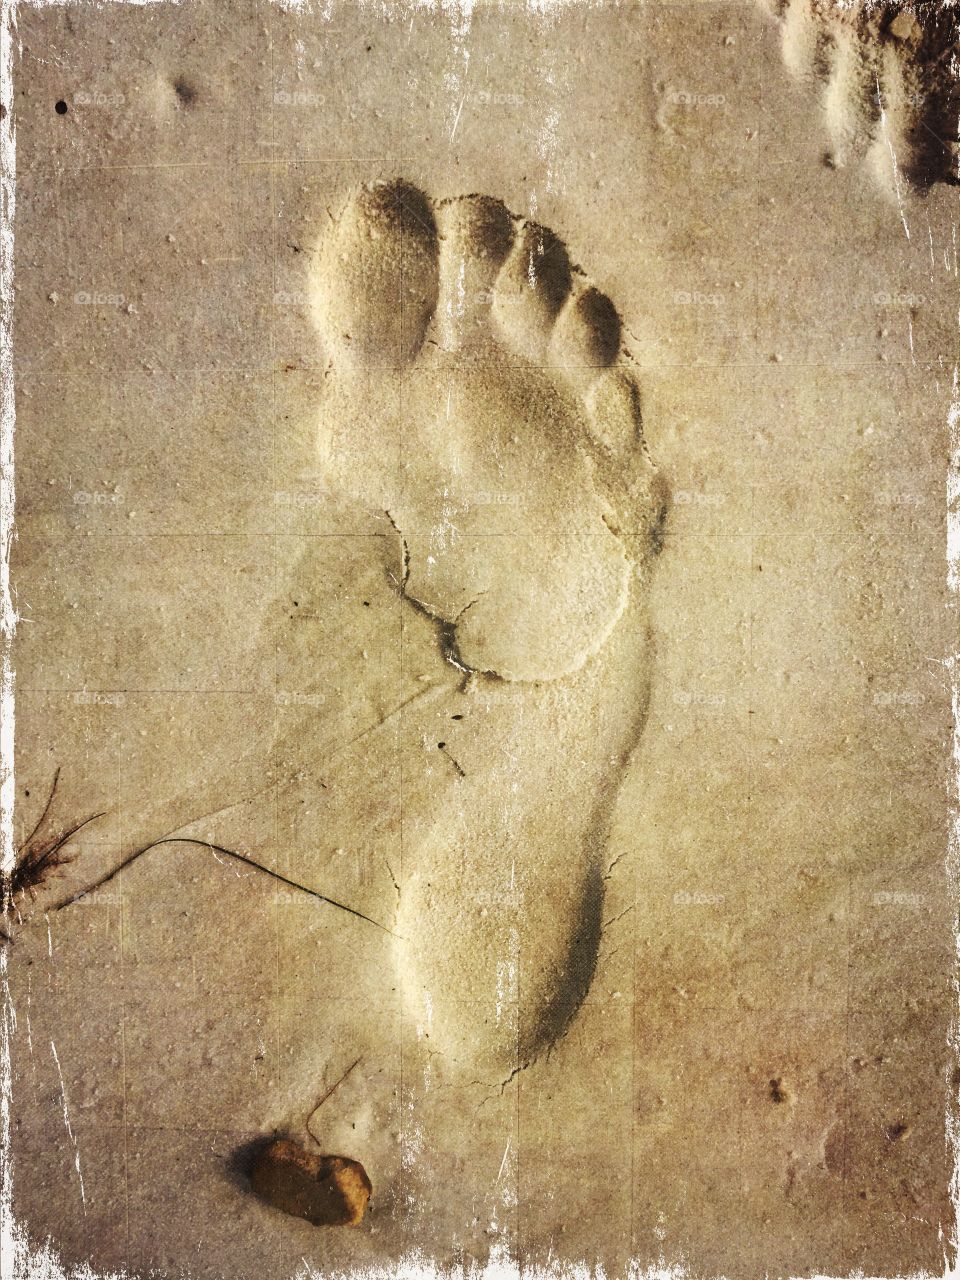 Footprint on the Beach